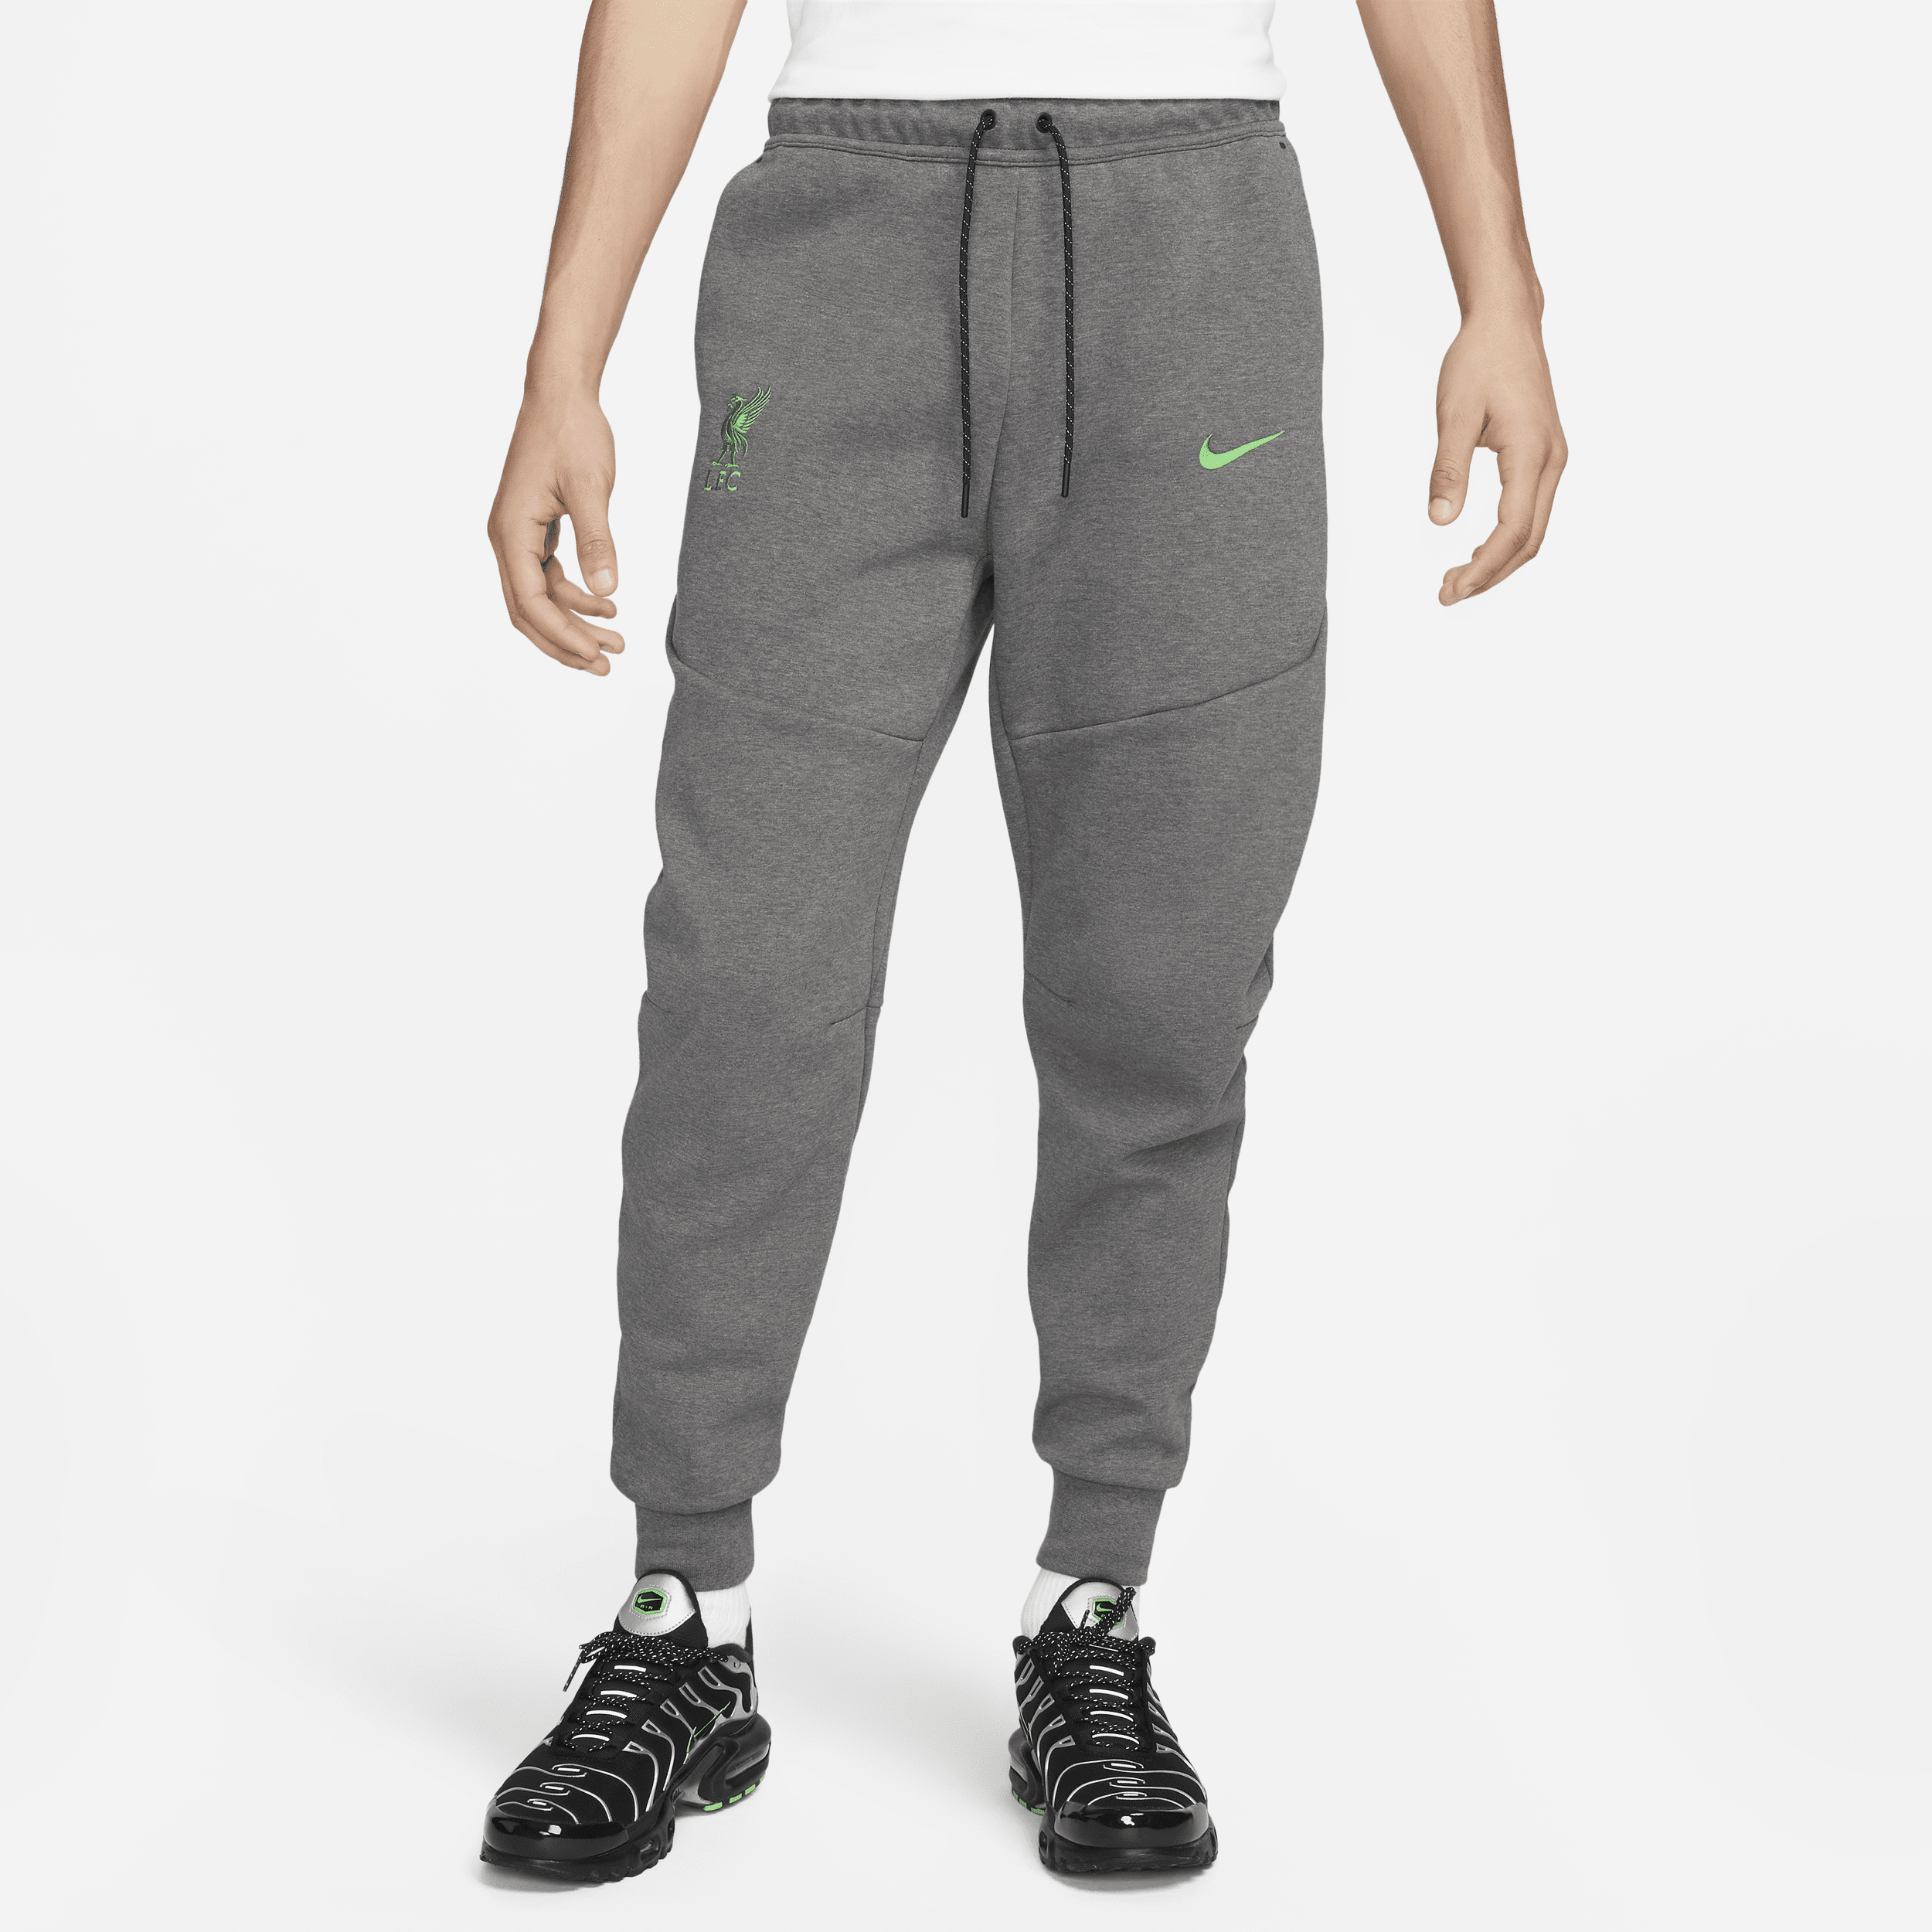 Pantaloni jogger Nike Liverpool FC Tech Fleece – Uomo - Grigio